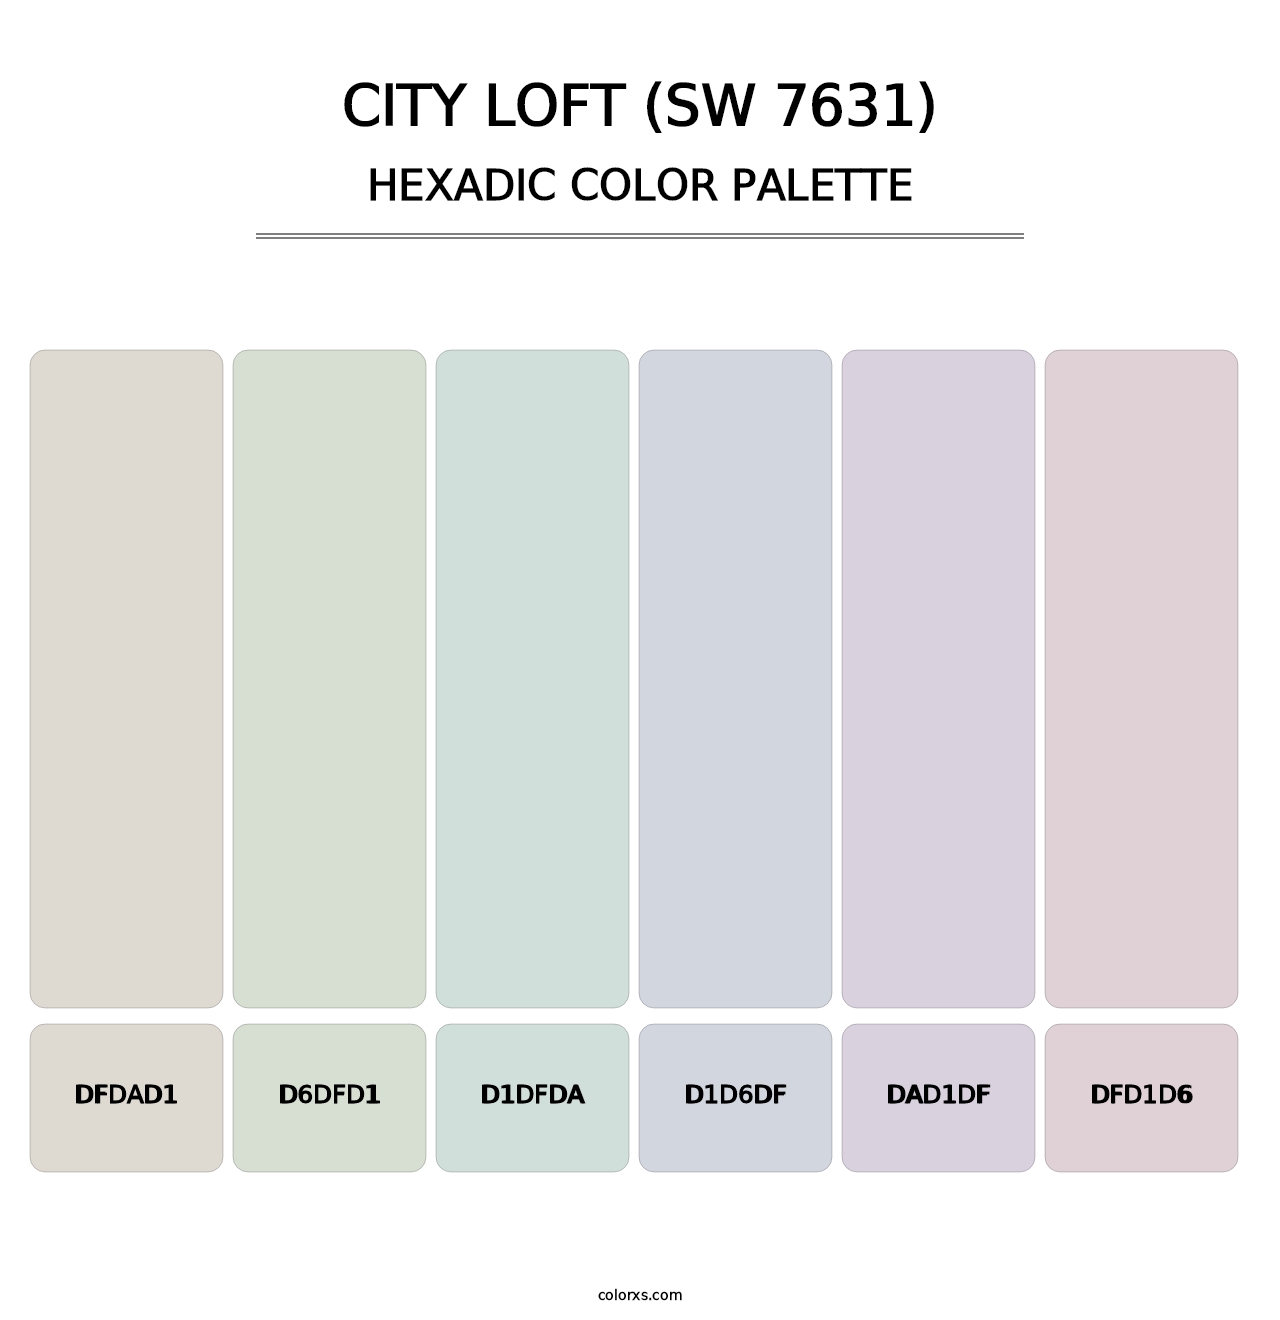 City Loft (SW 7631) - Hexadic Color Palette